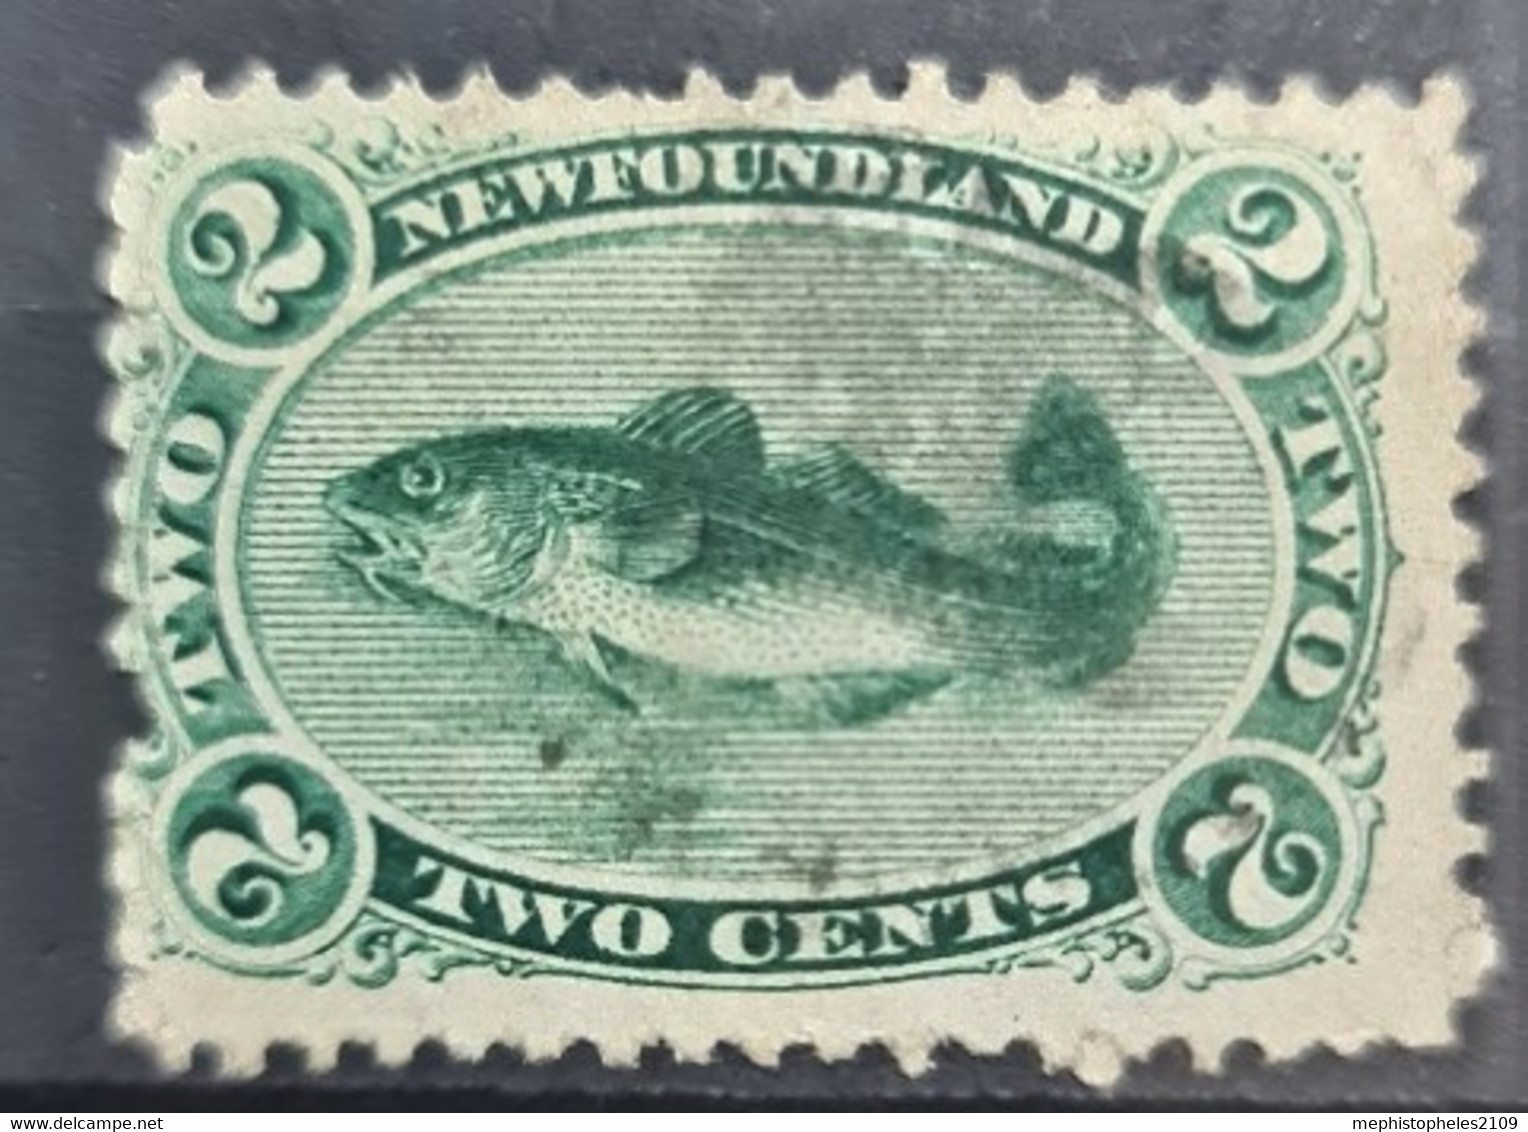 NEWFOUNDLAND 1865 - Canceled - Sc# 24 - 2c - 1865-1902